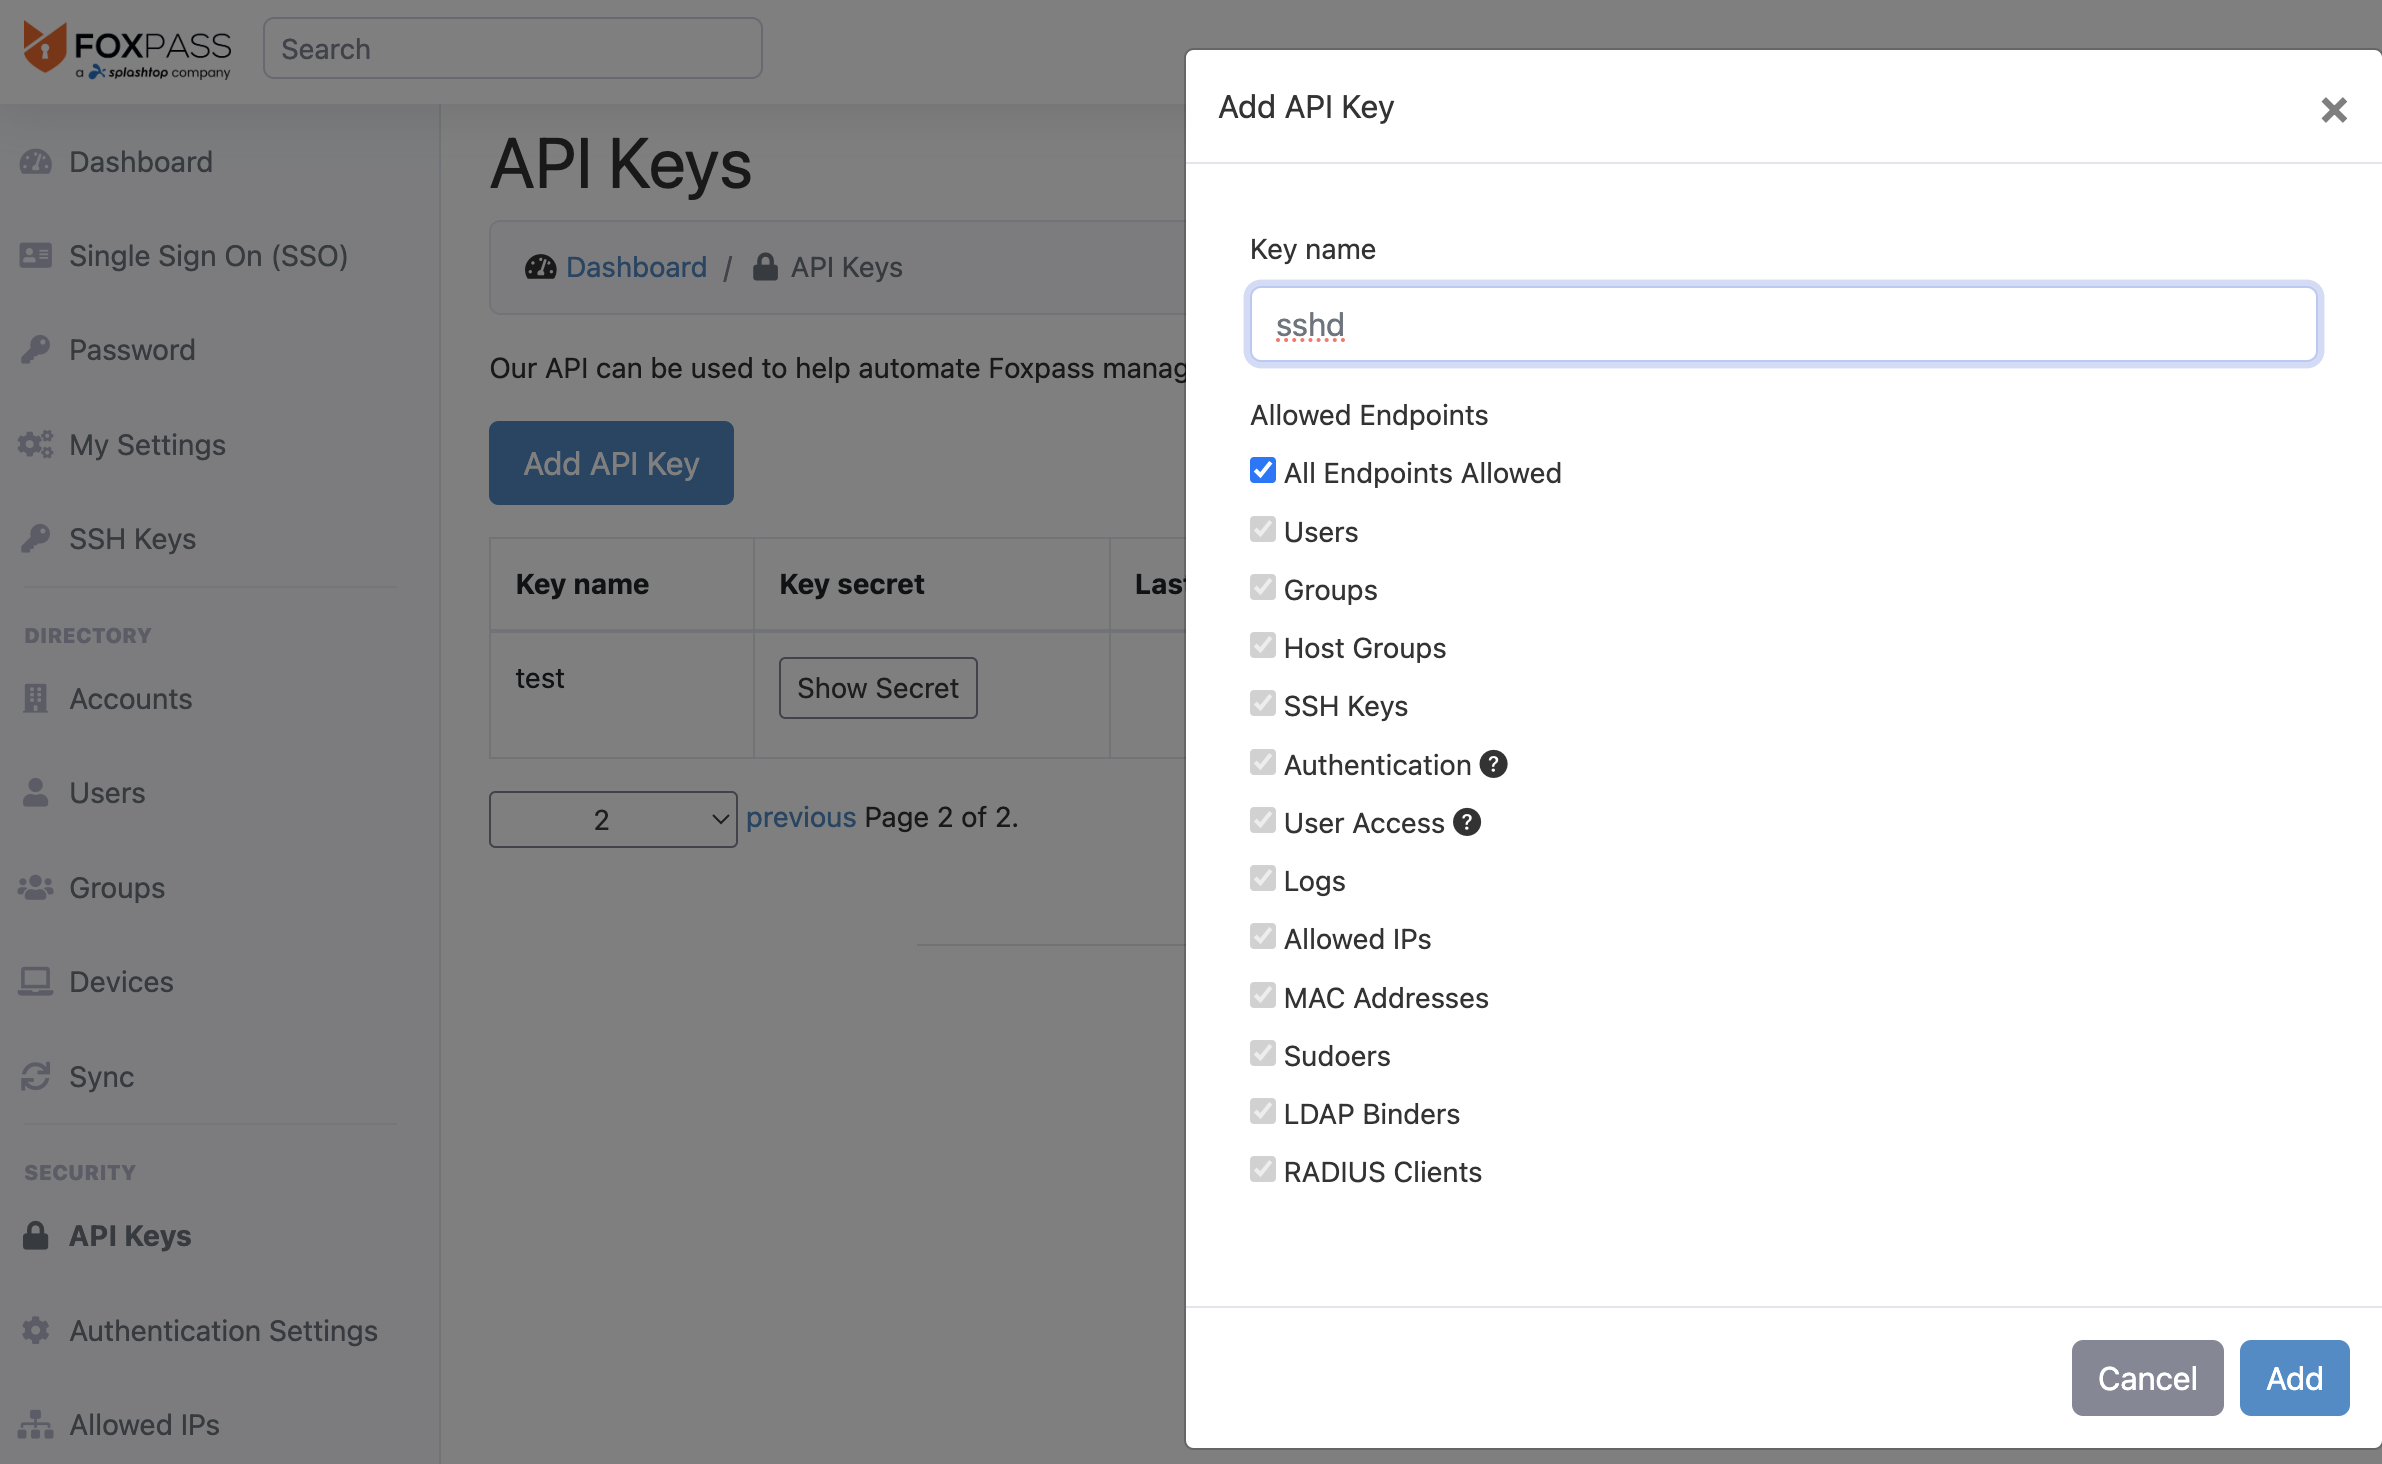 Create API key